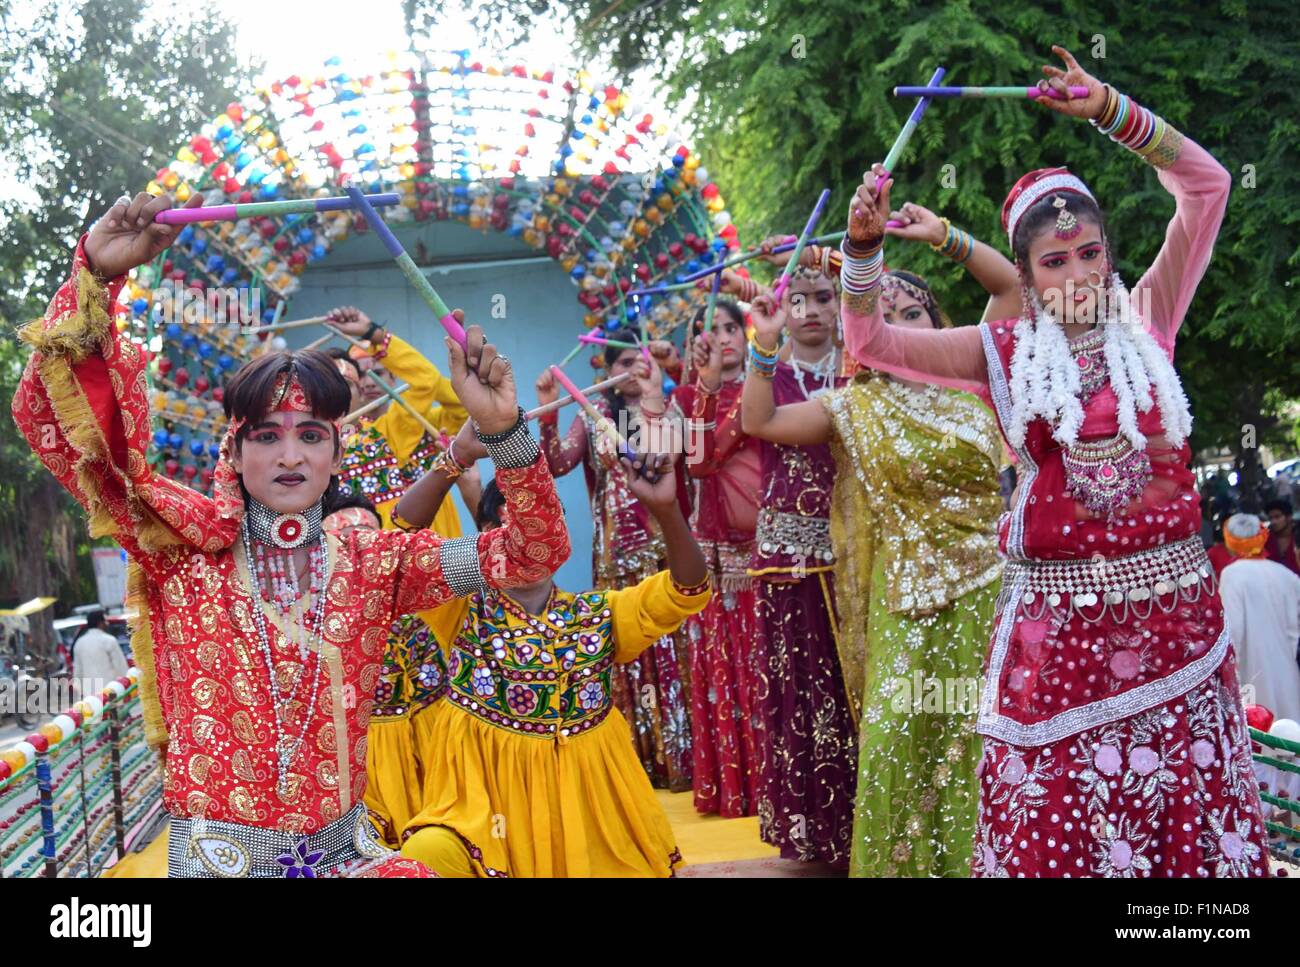 Di Allahabad, India. 04 Sep, 2015. Iskon devoti lungo con altri devoti indù si uniscono in una processione religiosa durante il 'Shri Krishna Janmashtami', un festival di Krishna il compleanno. © Amar profondi/Pacific Press/Alamy Live News Foto Stock